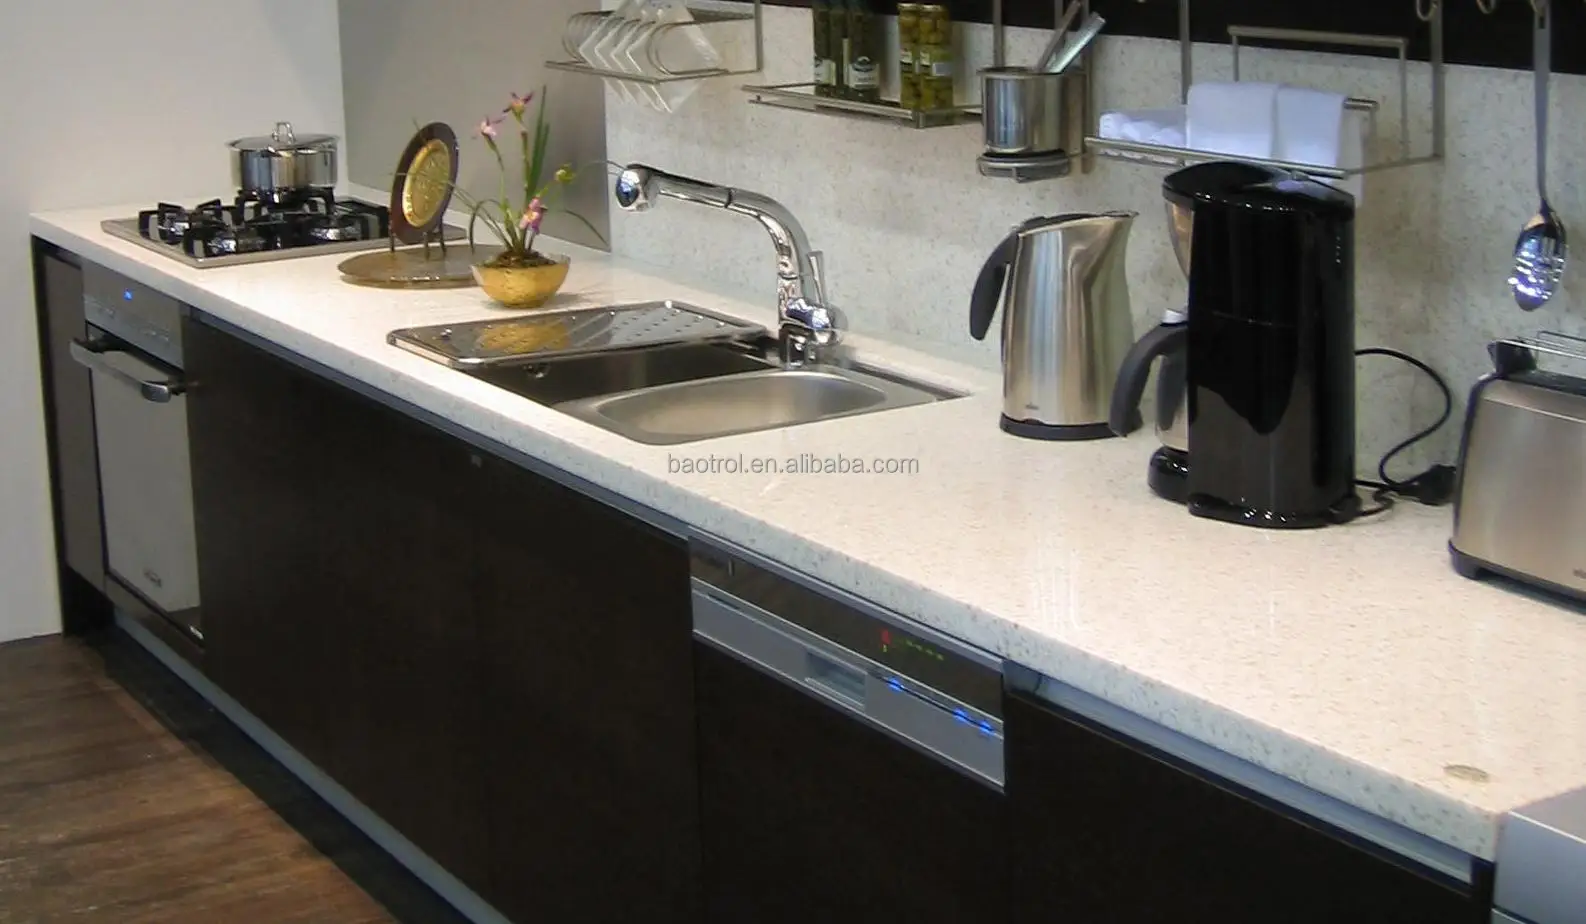 Composite Marble Kitchen Cabinet Table Top Design Buy Lemari Dapur Atas Meja Desain Kabinet Meja Desain Lemari Dapur Atas Meja Product On Alibabacom